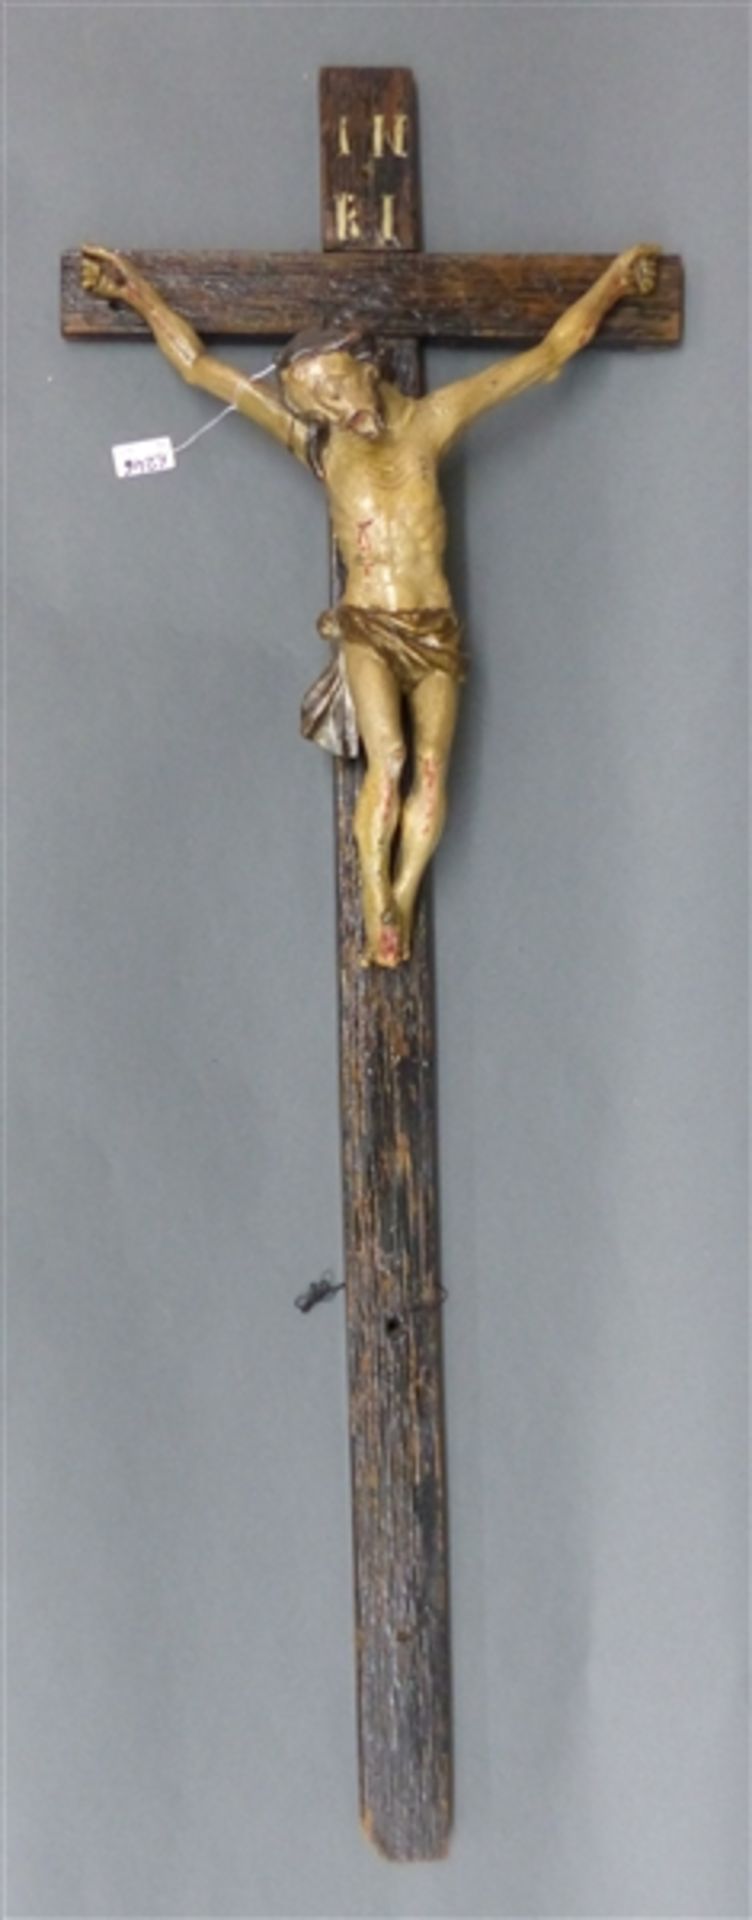 Kruzifix Holz, Süddeutsch, 18. Jh., Fassung und Kreuz später, Korpushöhe 37 cm, Gesamthöhe 92 cm,